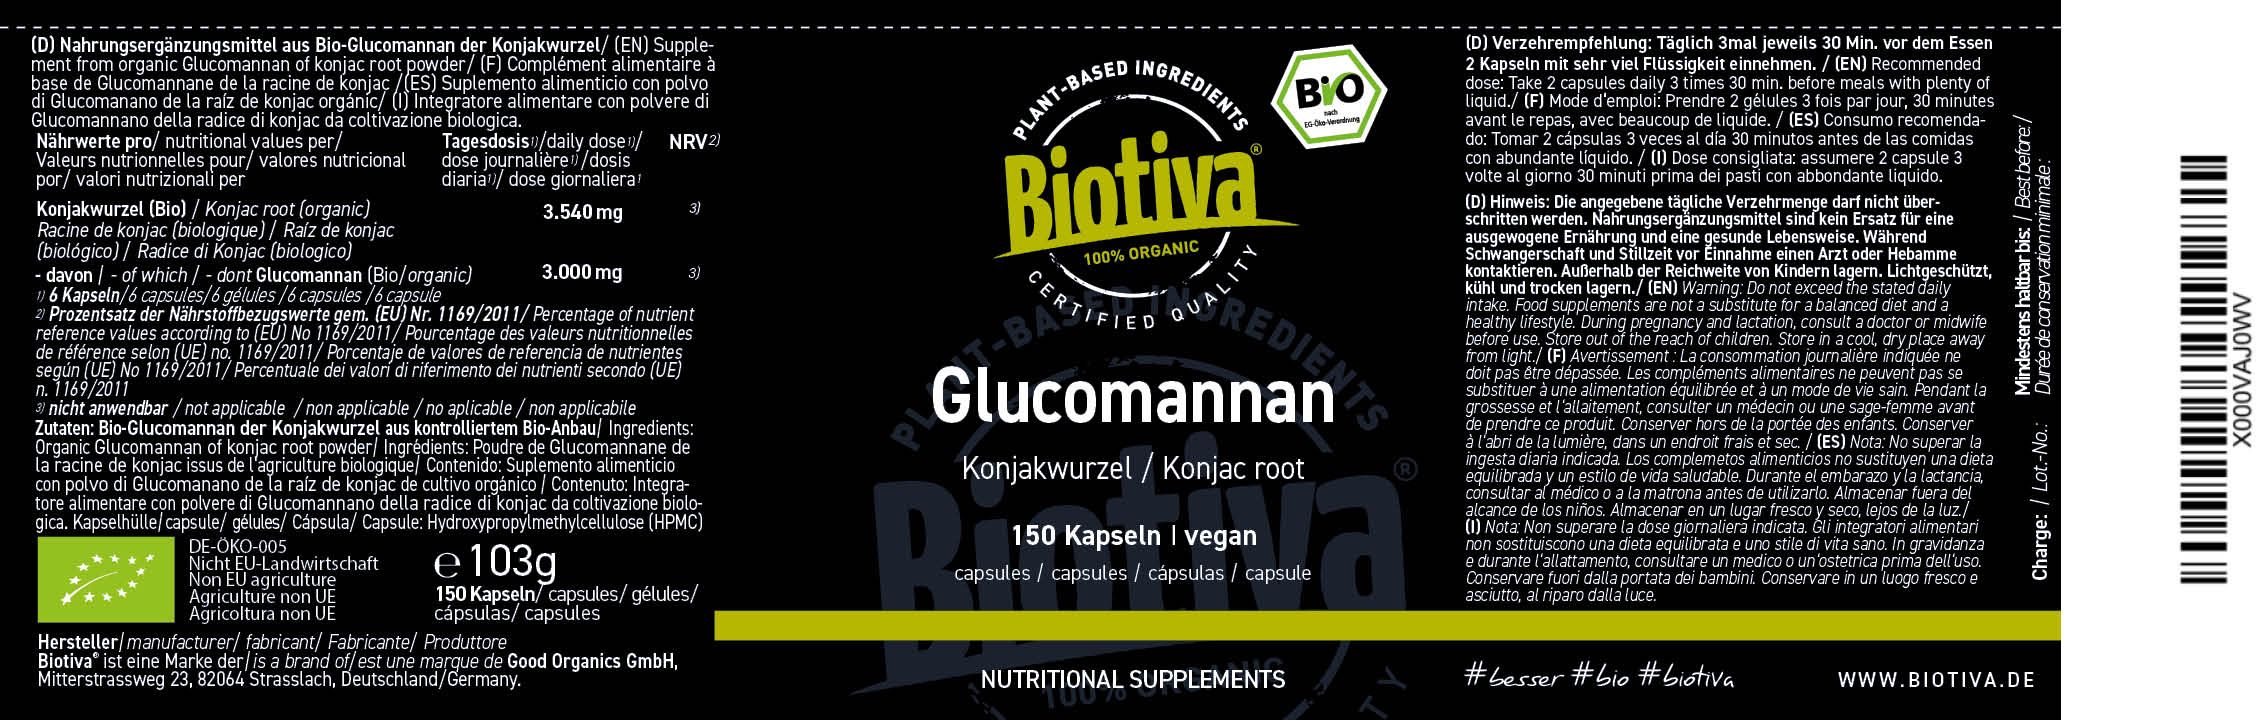 Biotiva Glucomannan hochdosiert Bio